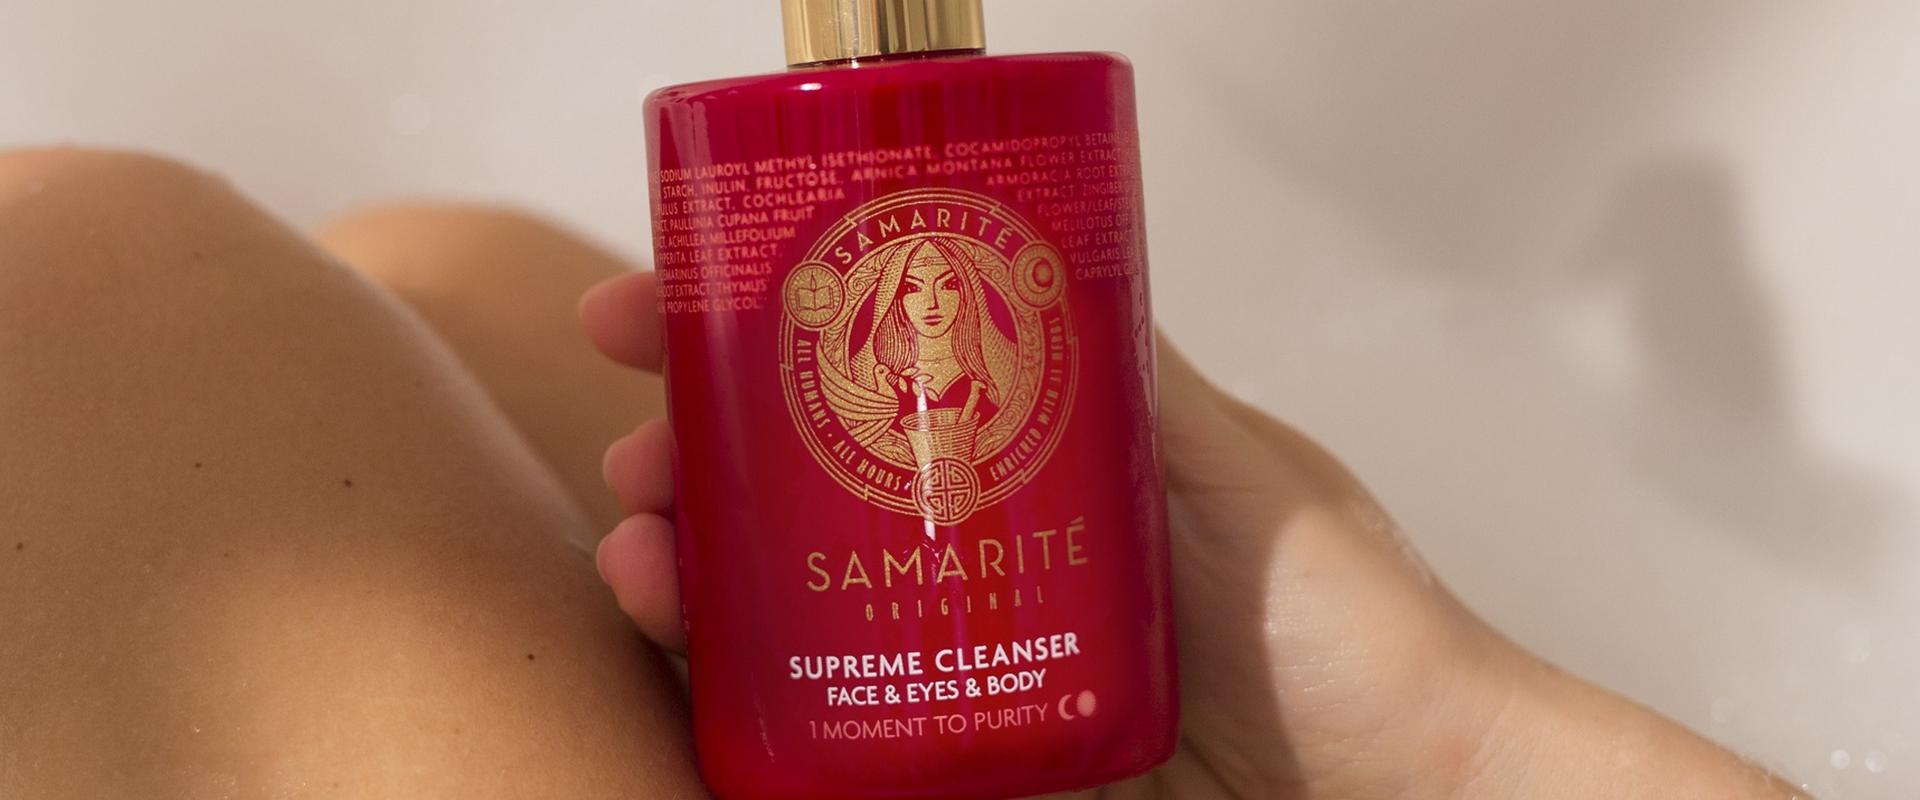 Samarite Supreme Cleanser - daje super przyjemne doznania idealnego oczyszczania